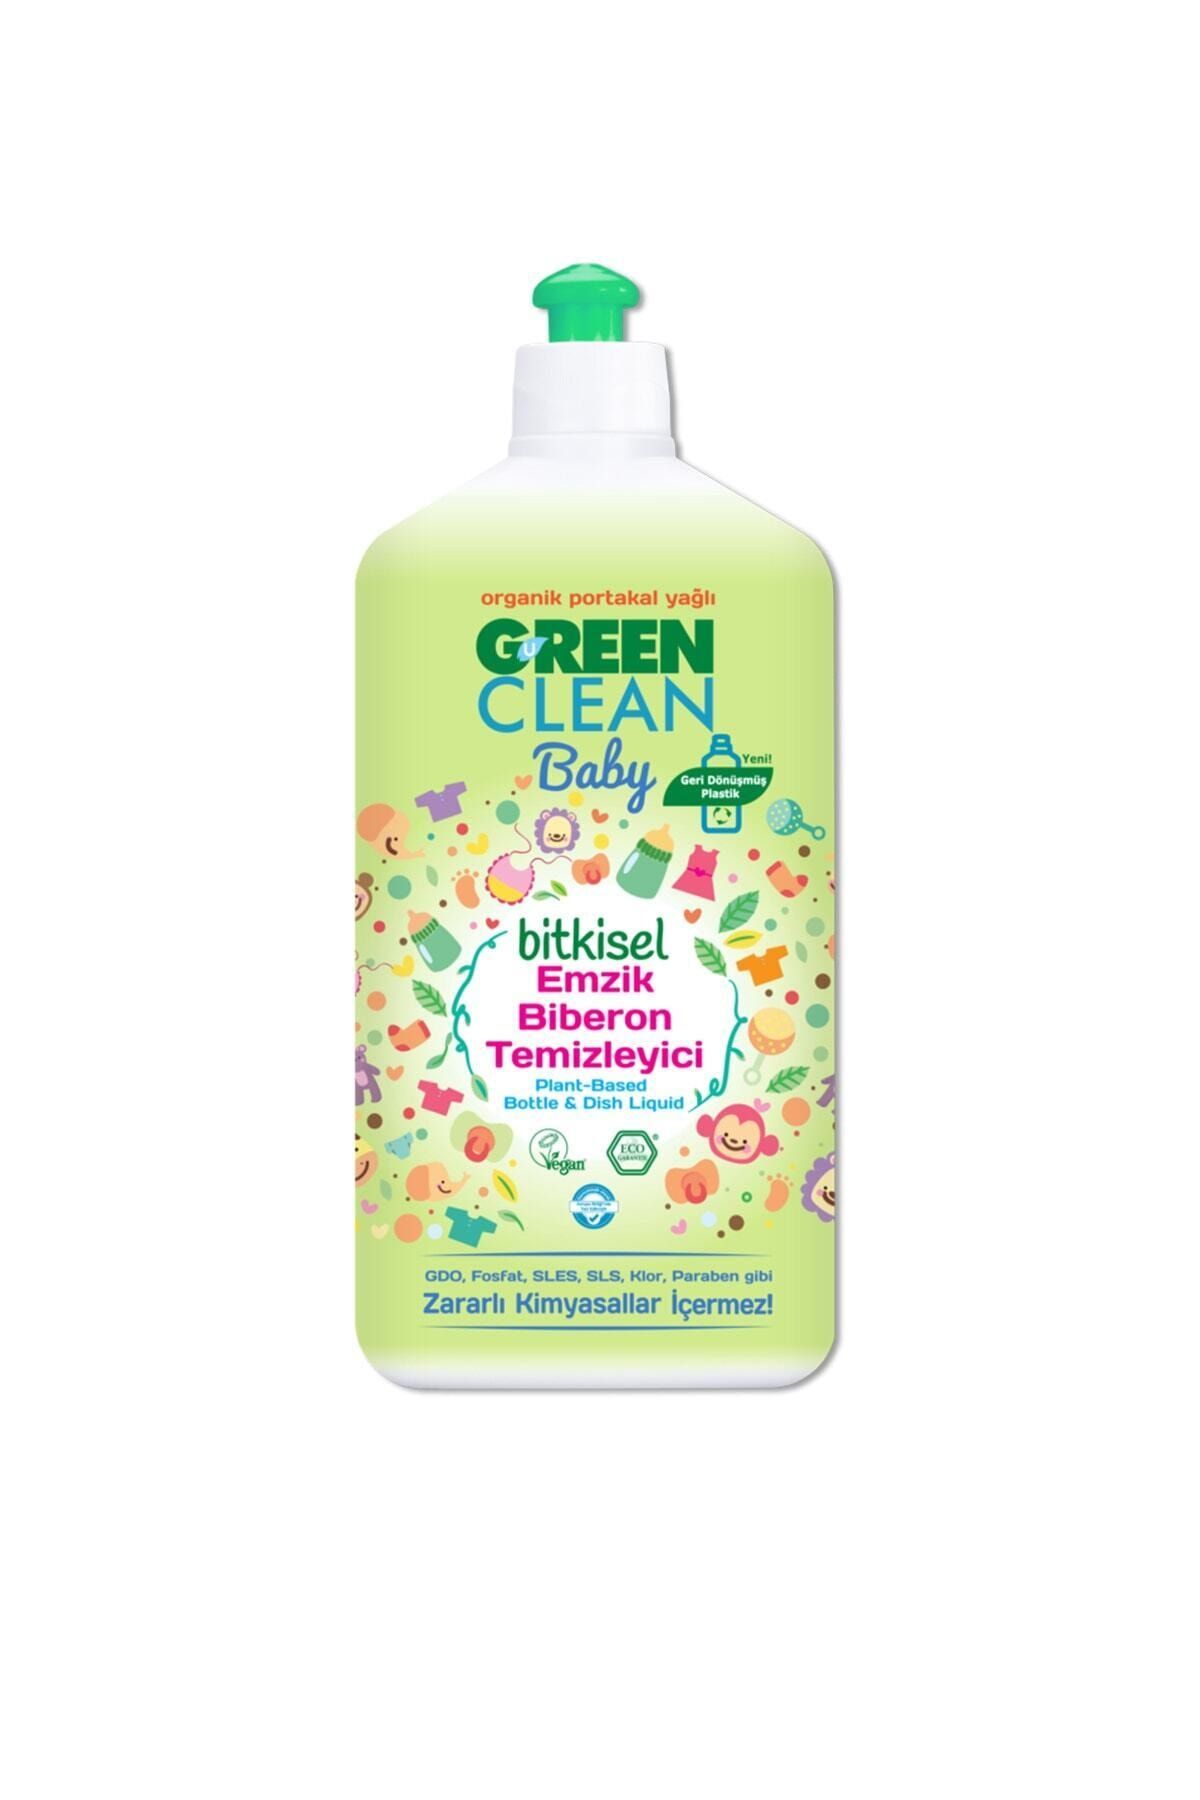 Green Clean Organik Portakal Yağlı Bitkisel Emzik Biberon Temizleyici 500ml